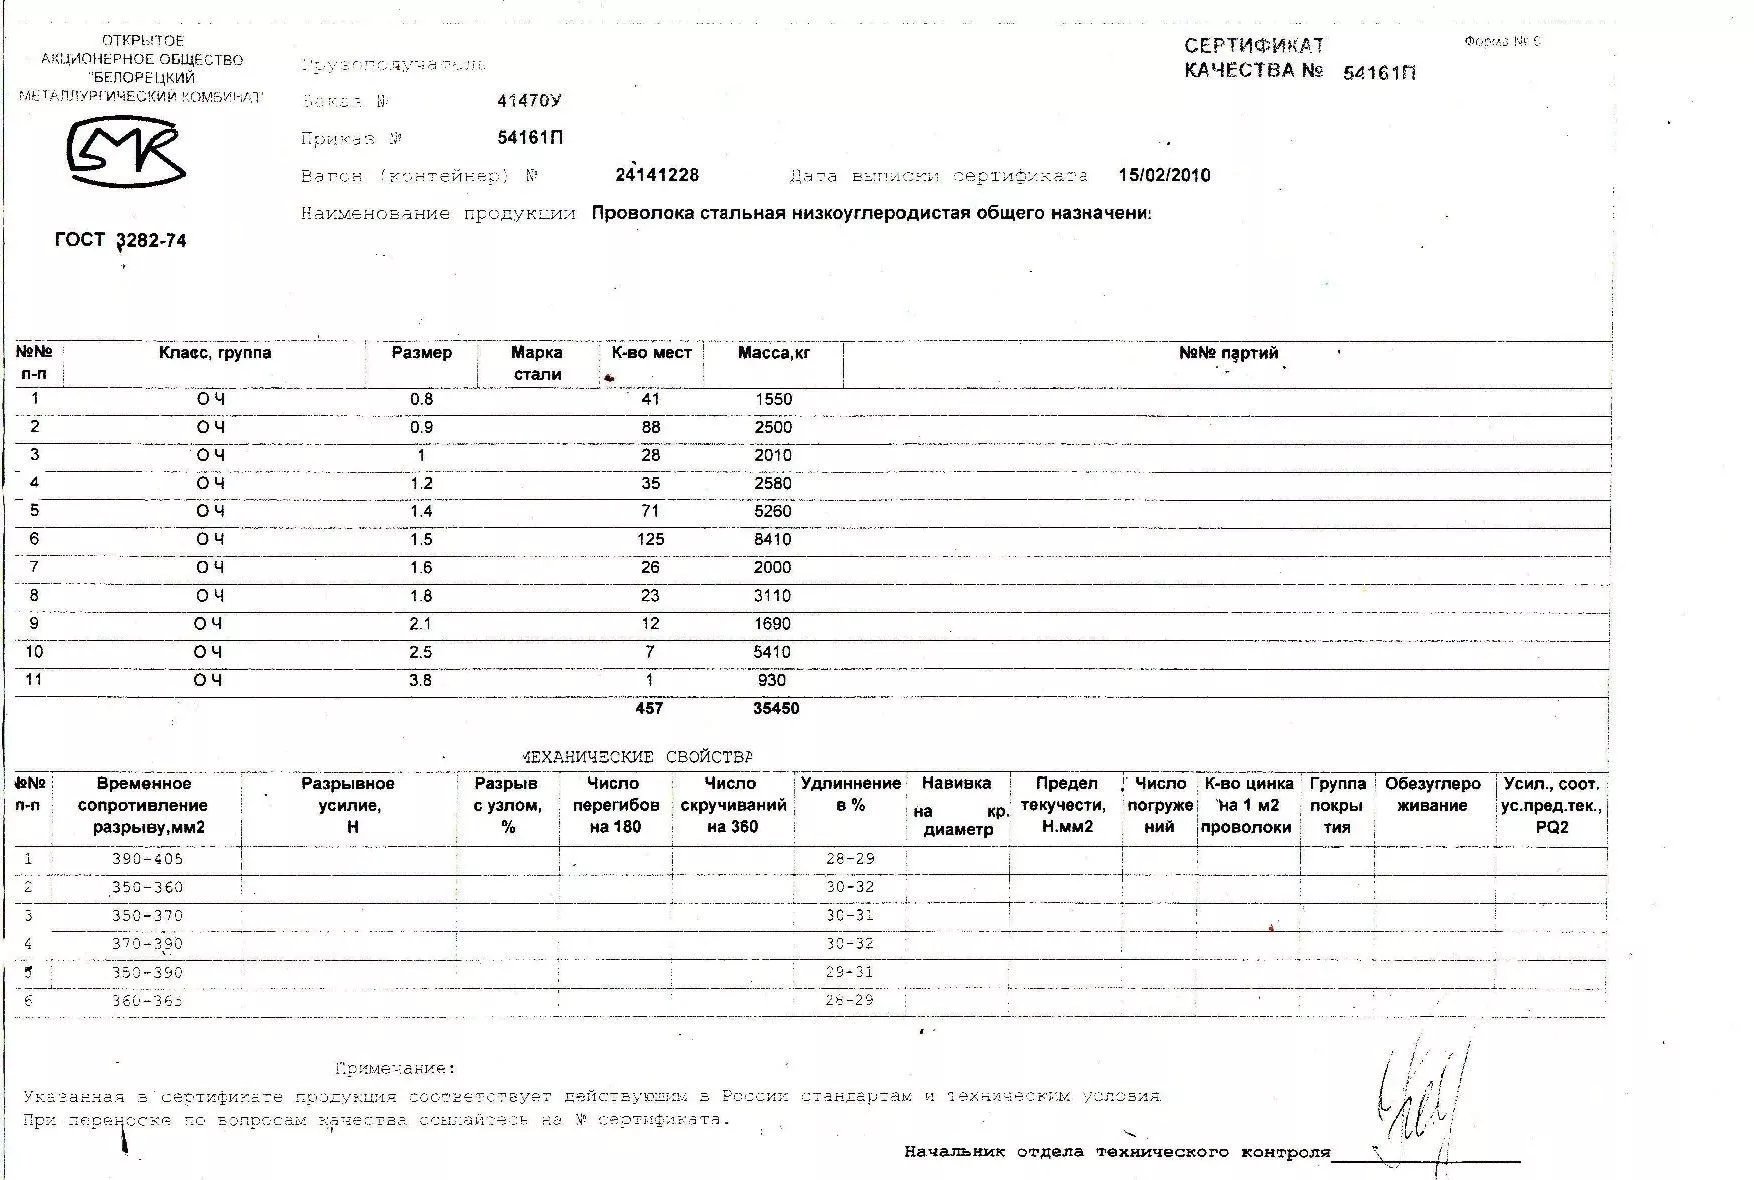 Сертификат на проволоку черную термически обработанную 3,8 от 2010-02